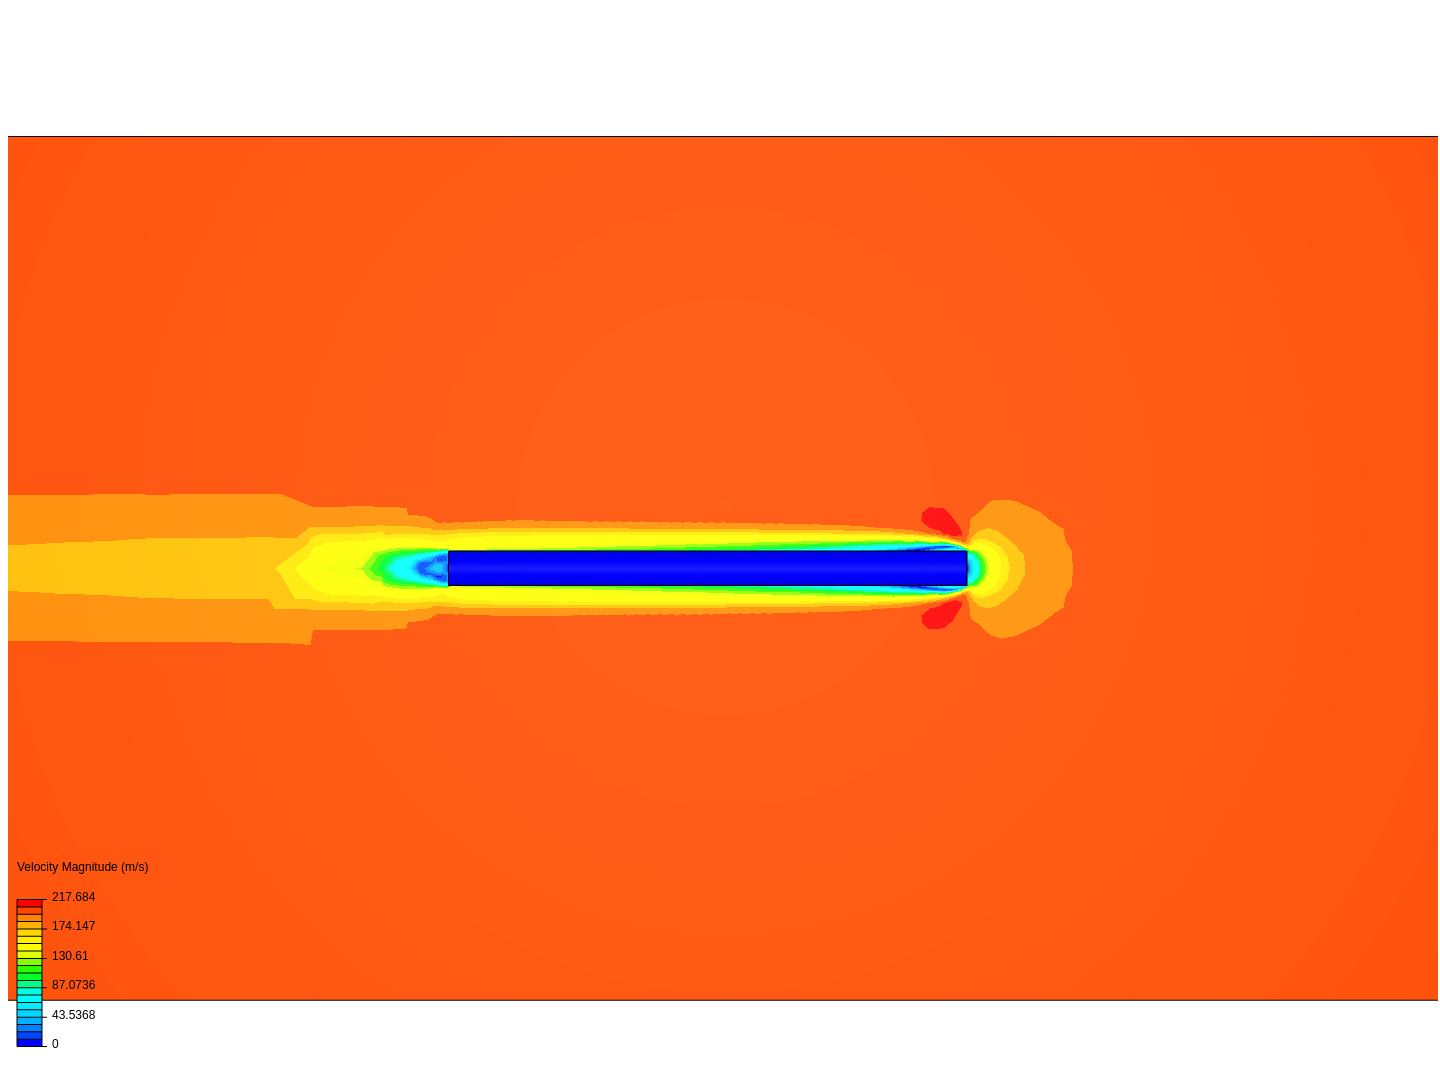 Rocket without Nosecone aerodynamics image